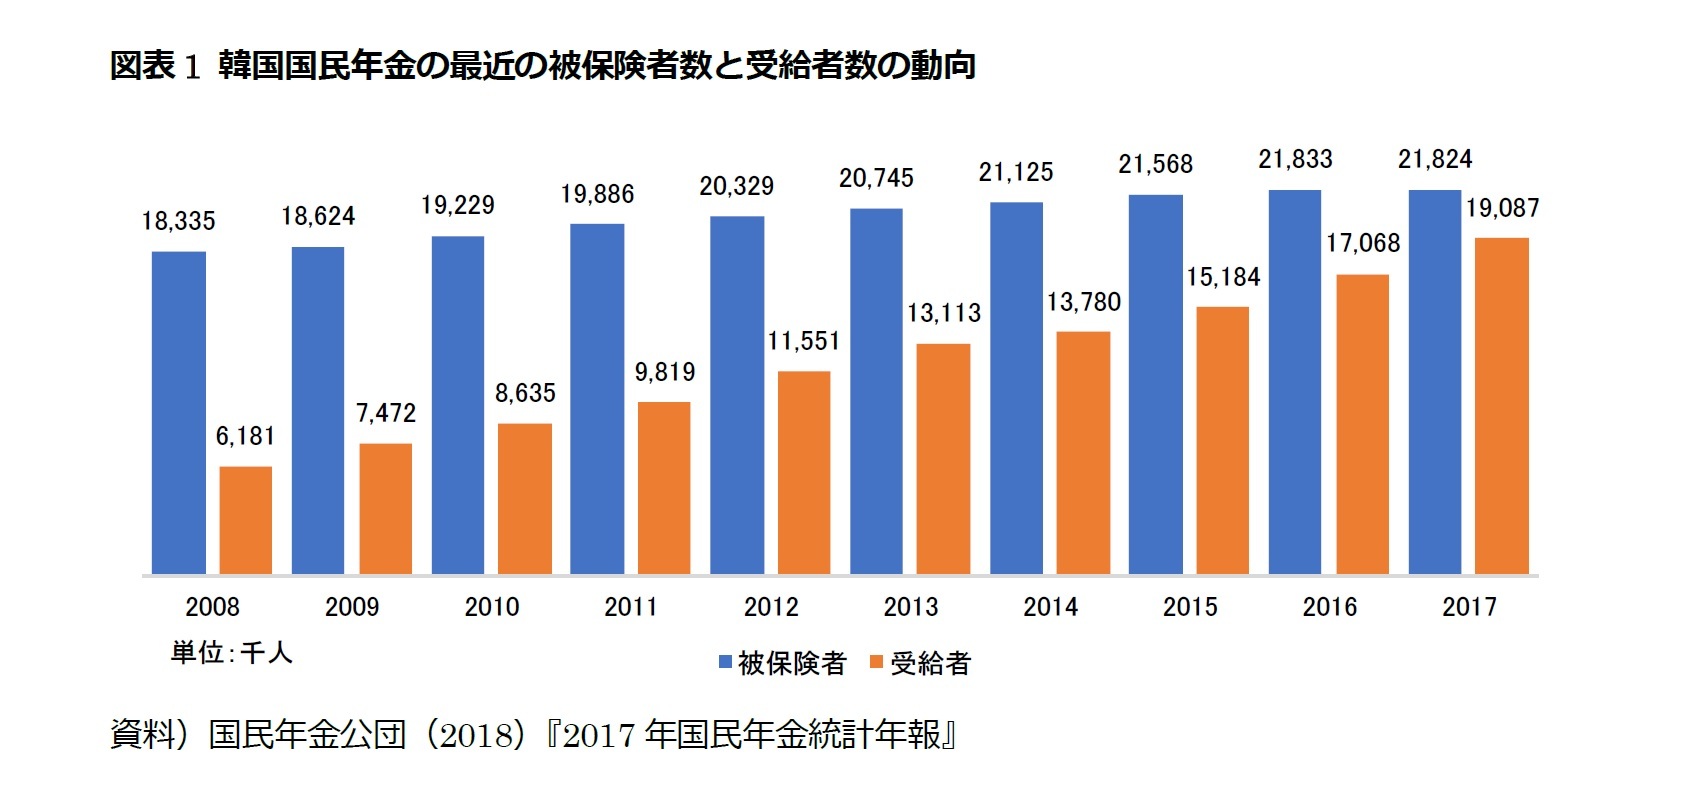 図表1 韓国国民年金の最近の被保険者数と受給者数の動向